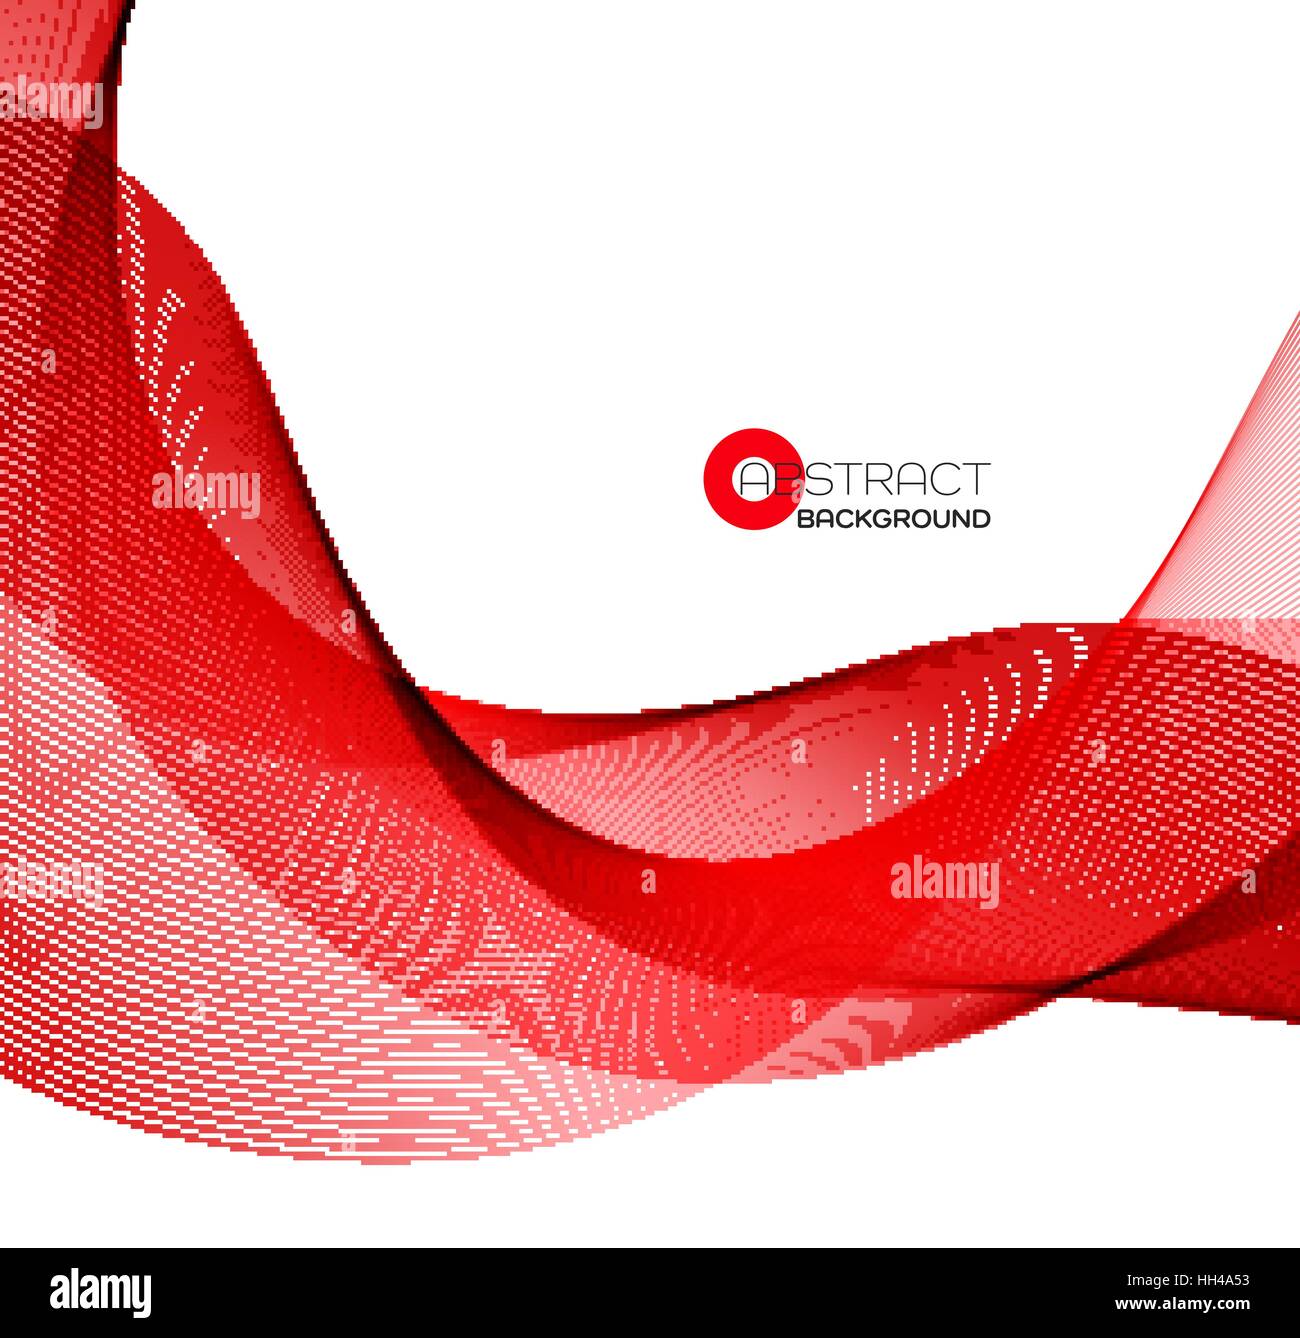 Vektor abstrakte Farbe rote Welle Design-Element. Stock Vektor